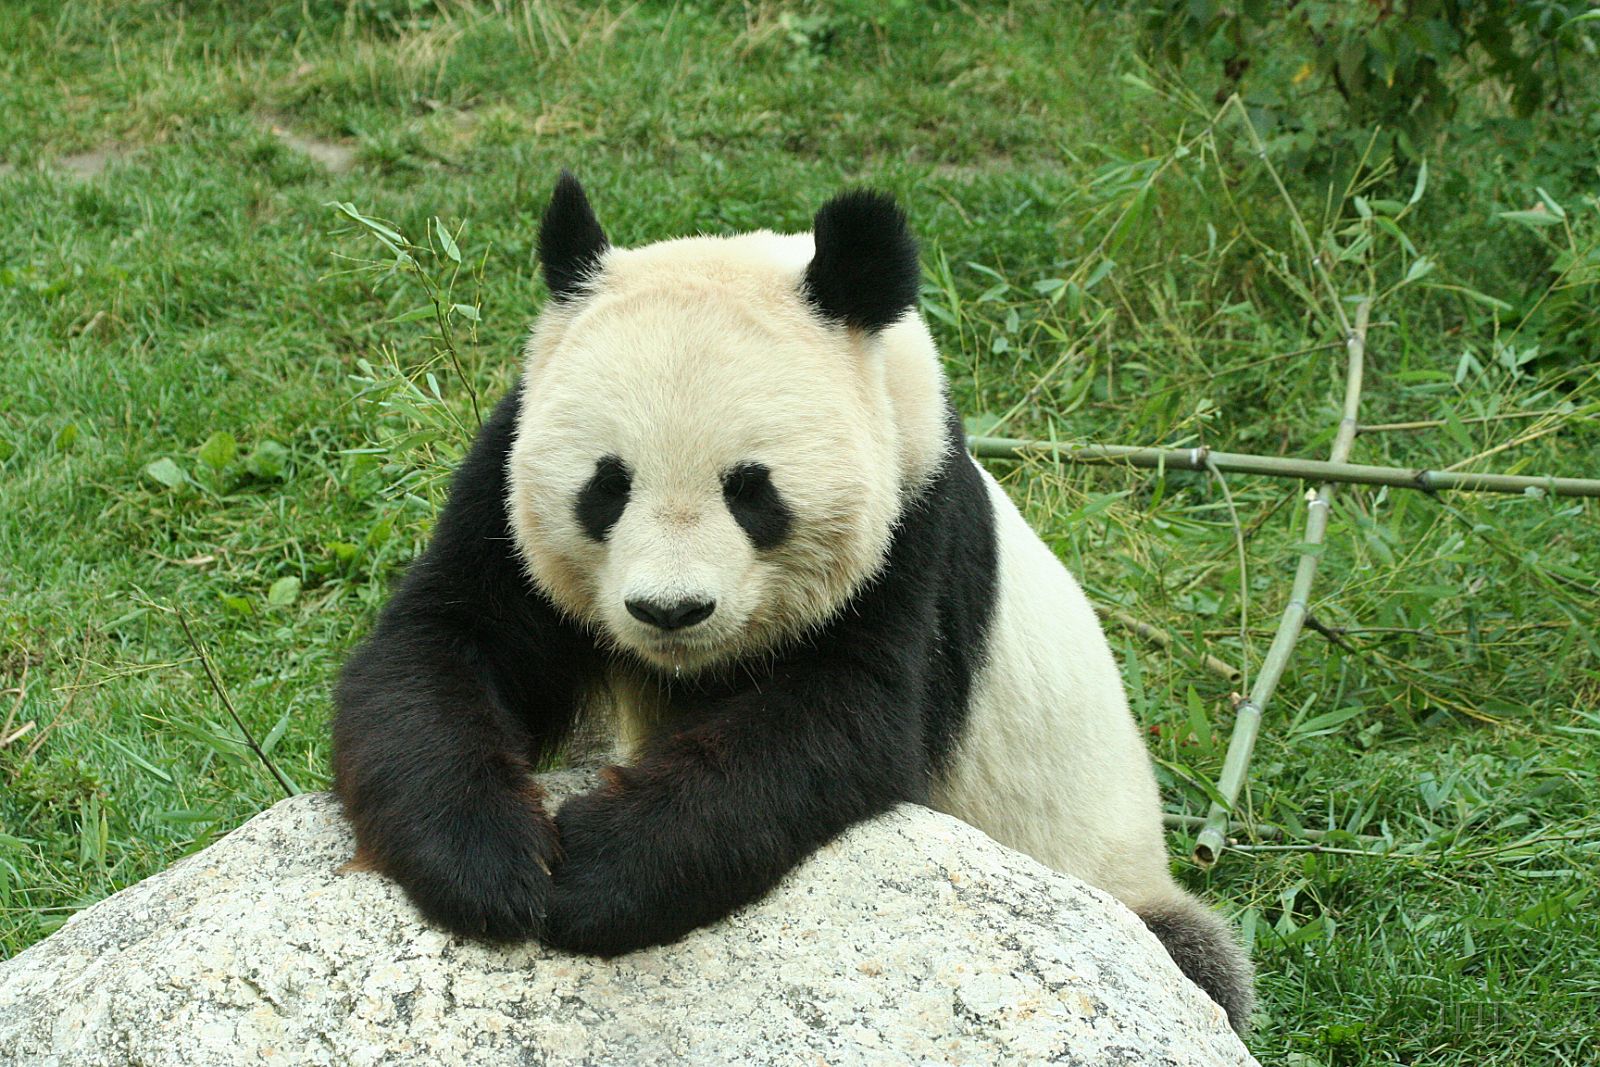 060917c708.JPG - Panda velká (Ailuropoda melanoleuca)